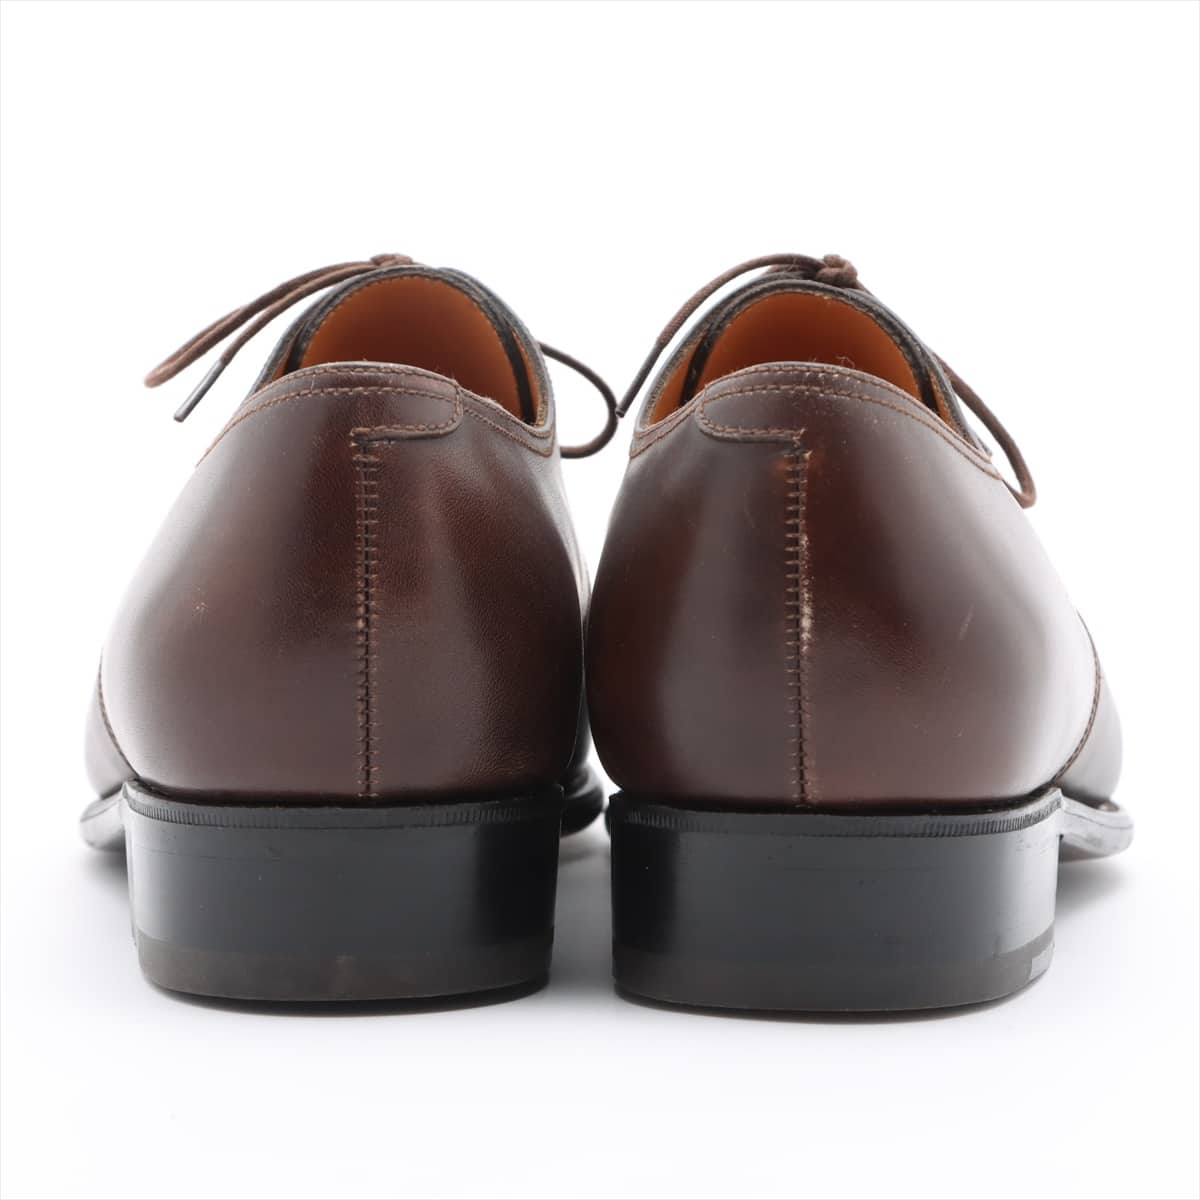 J. M. Weston Leather Dress shoes 7D Men's Brown 449